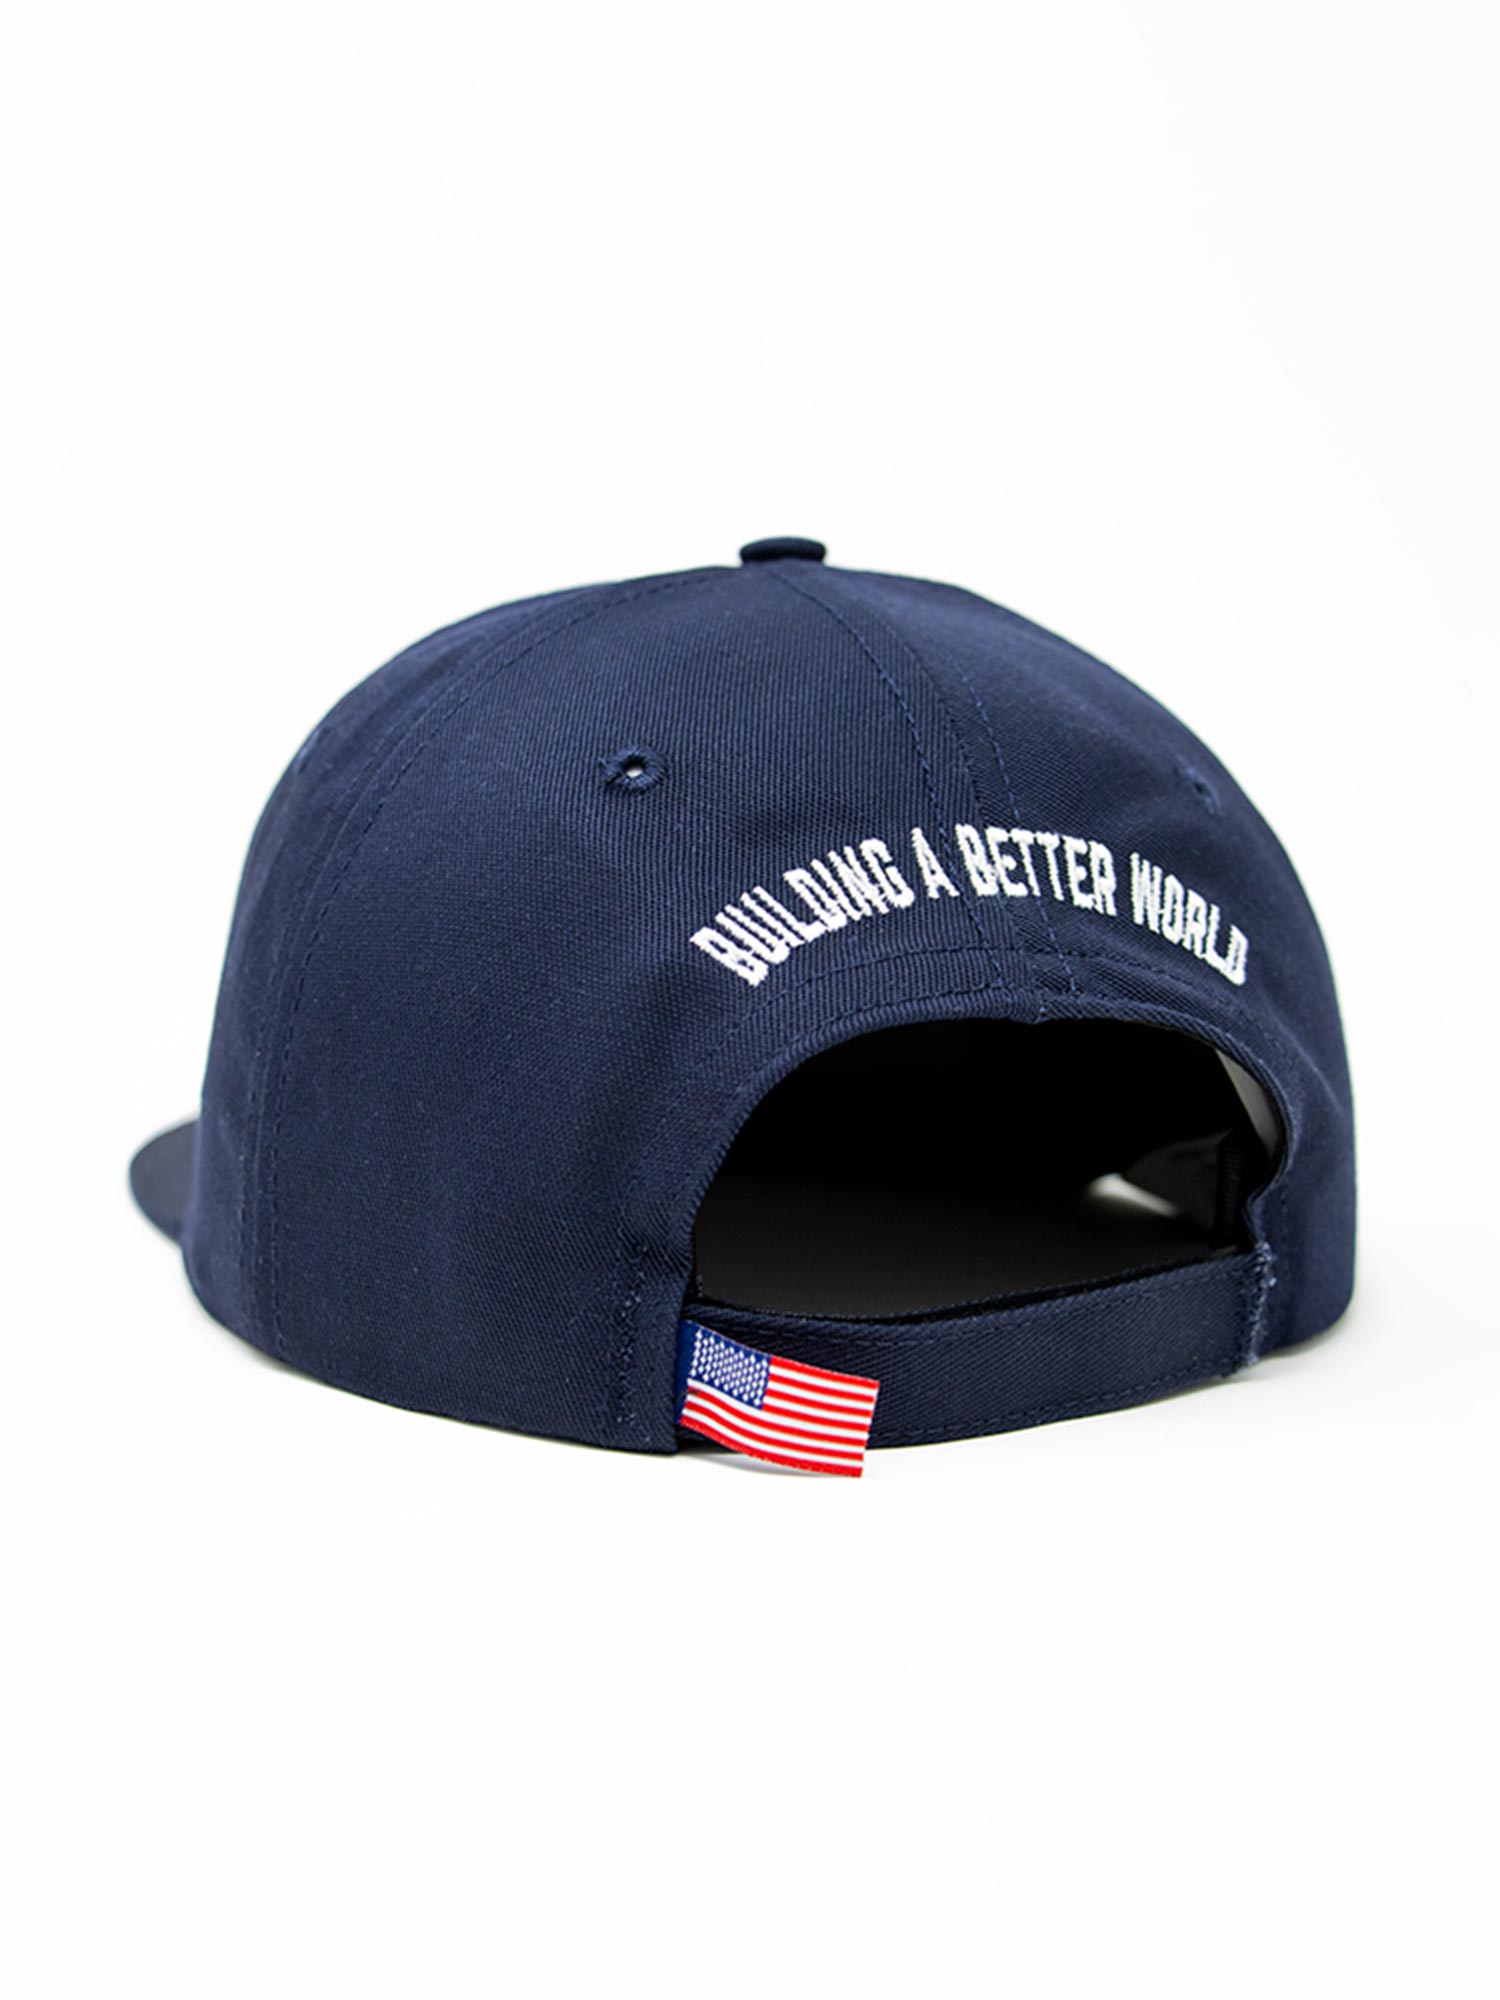 IBEW Hat Patch Hat - Navy - Backside